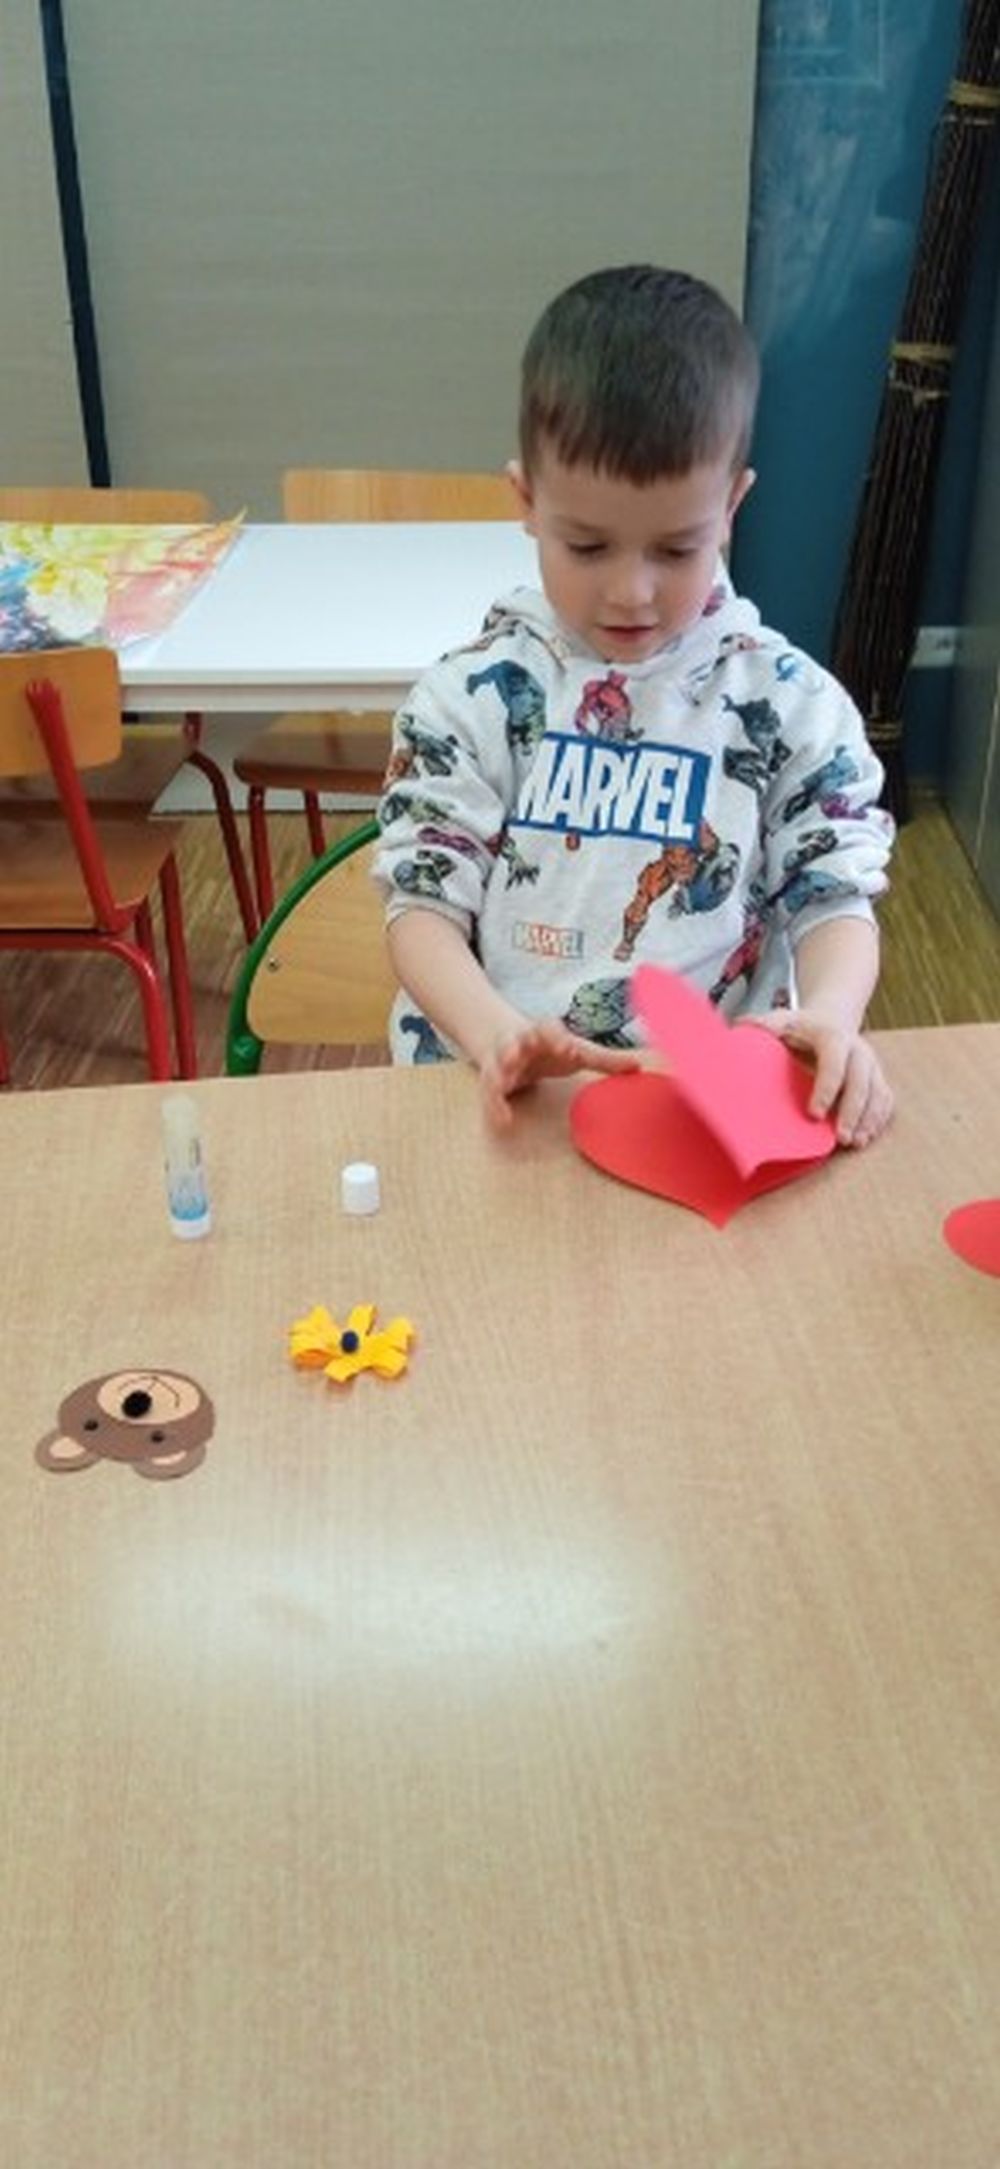 Chłopiec siedzi przy stoliku i robi serduszko z papieru